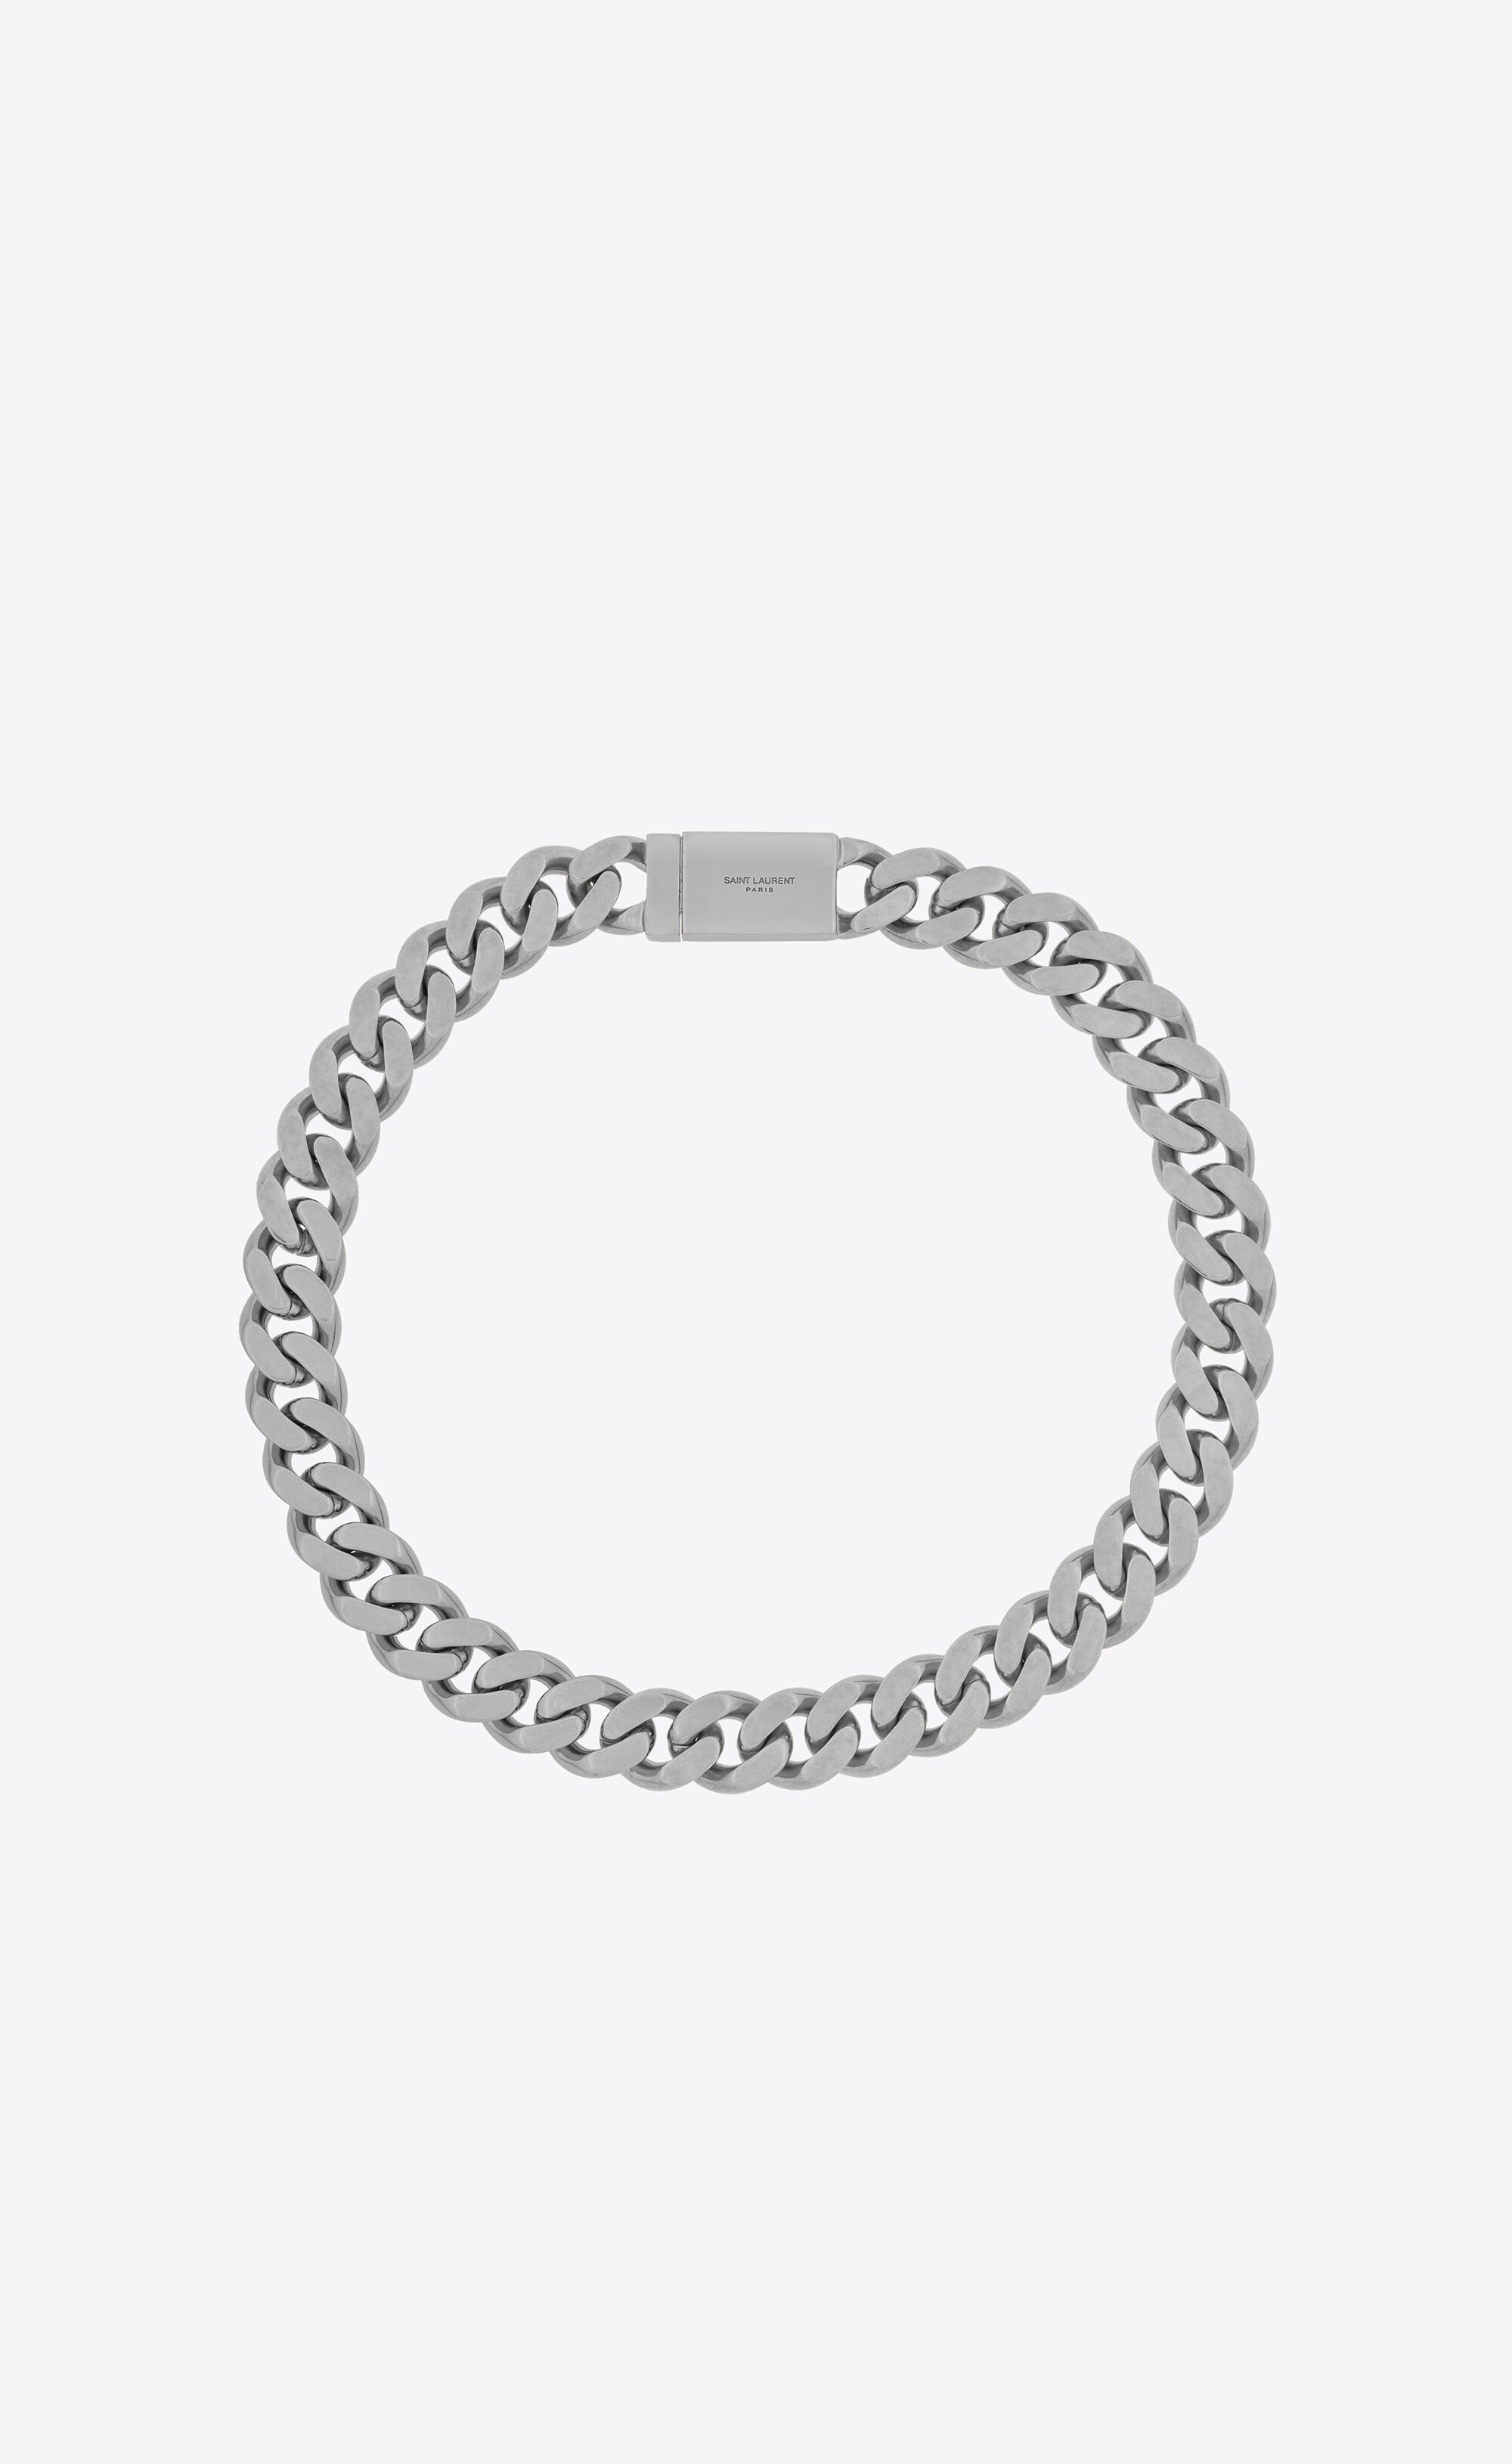 Saint Laurent Curb-Chain Bracelet